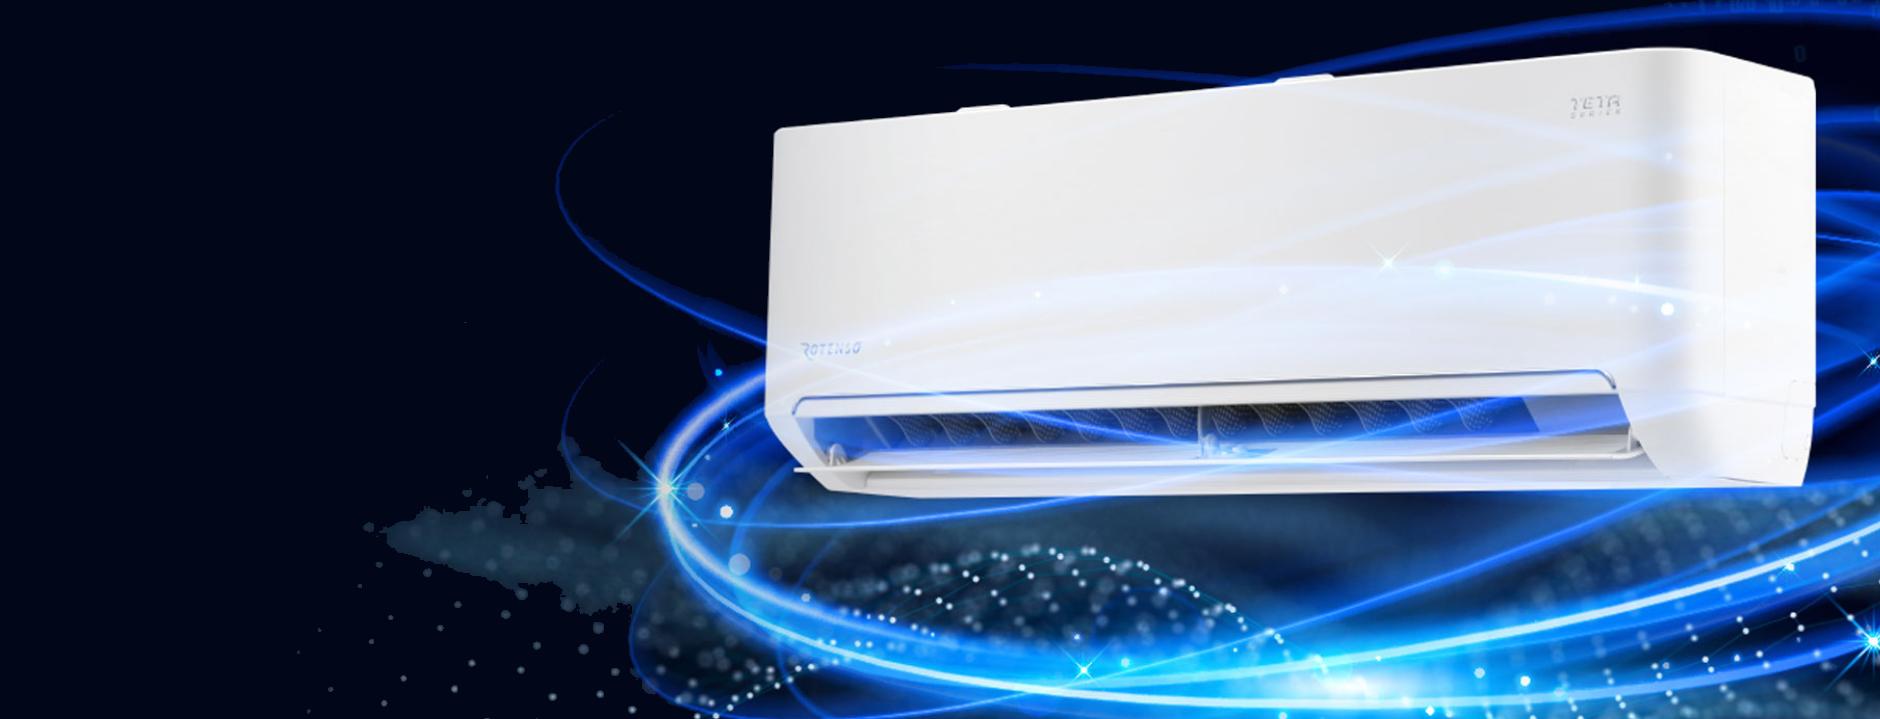 Klimatyzacja Rotenso Teta TA35X 3,5kW WiFi 4D - zdrowsze i czystsze powietrze dzięki lampie LED UV iAIR